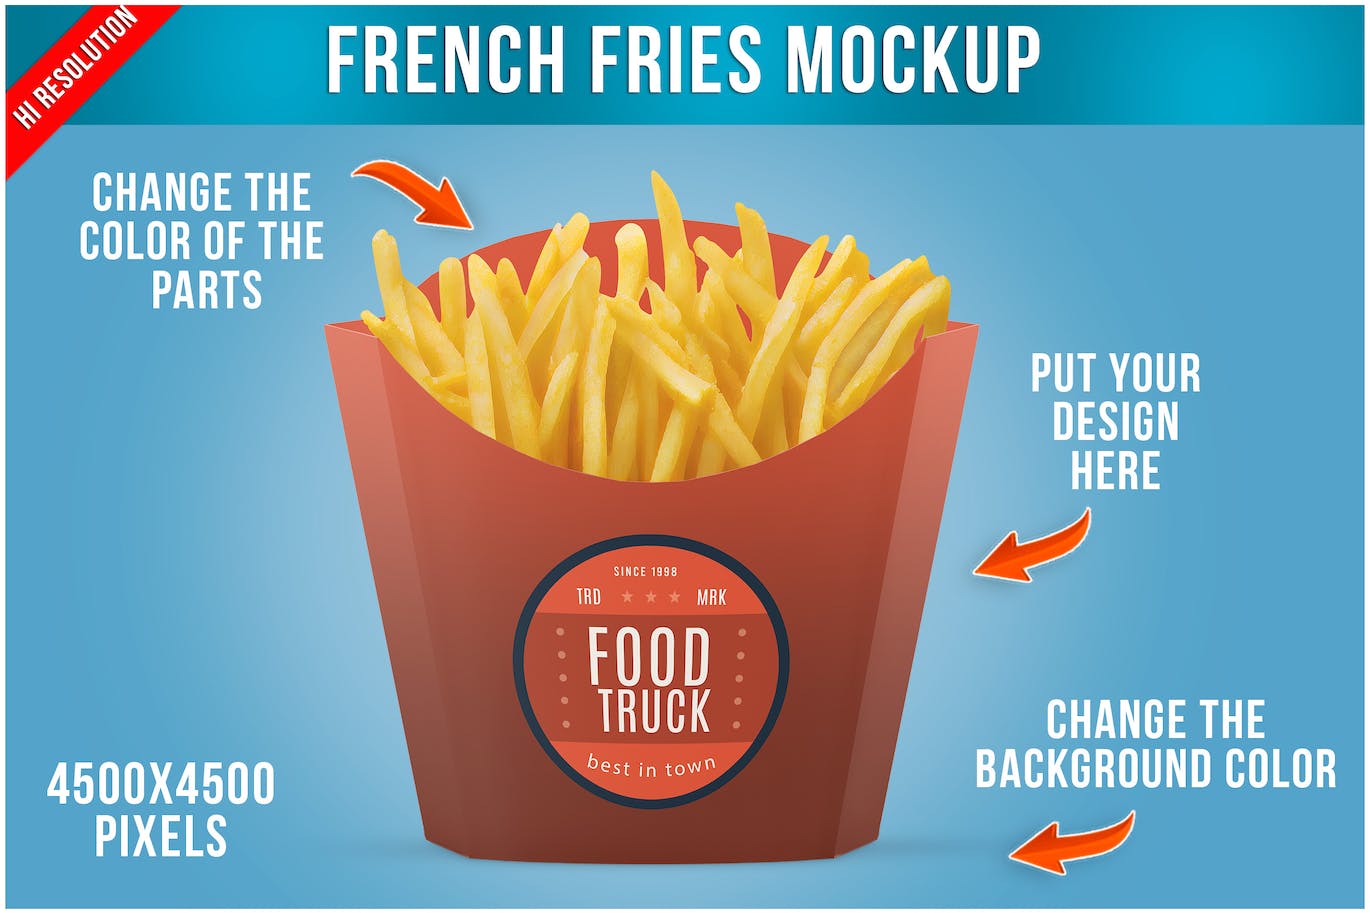 炸薯条纸盒包装设计样机 French Fries Packaging Mockup 样机素材 第1张